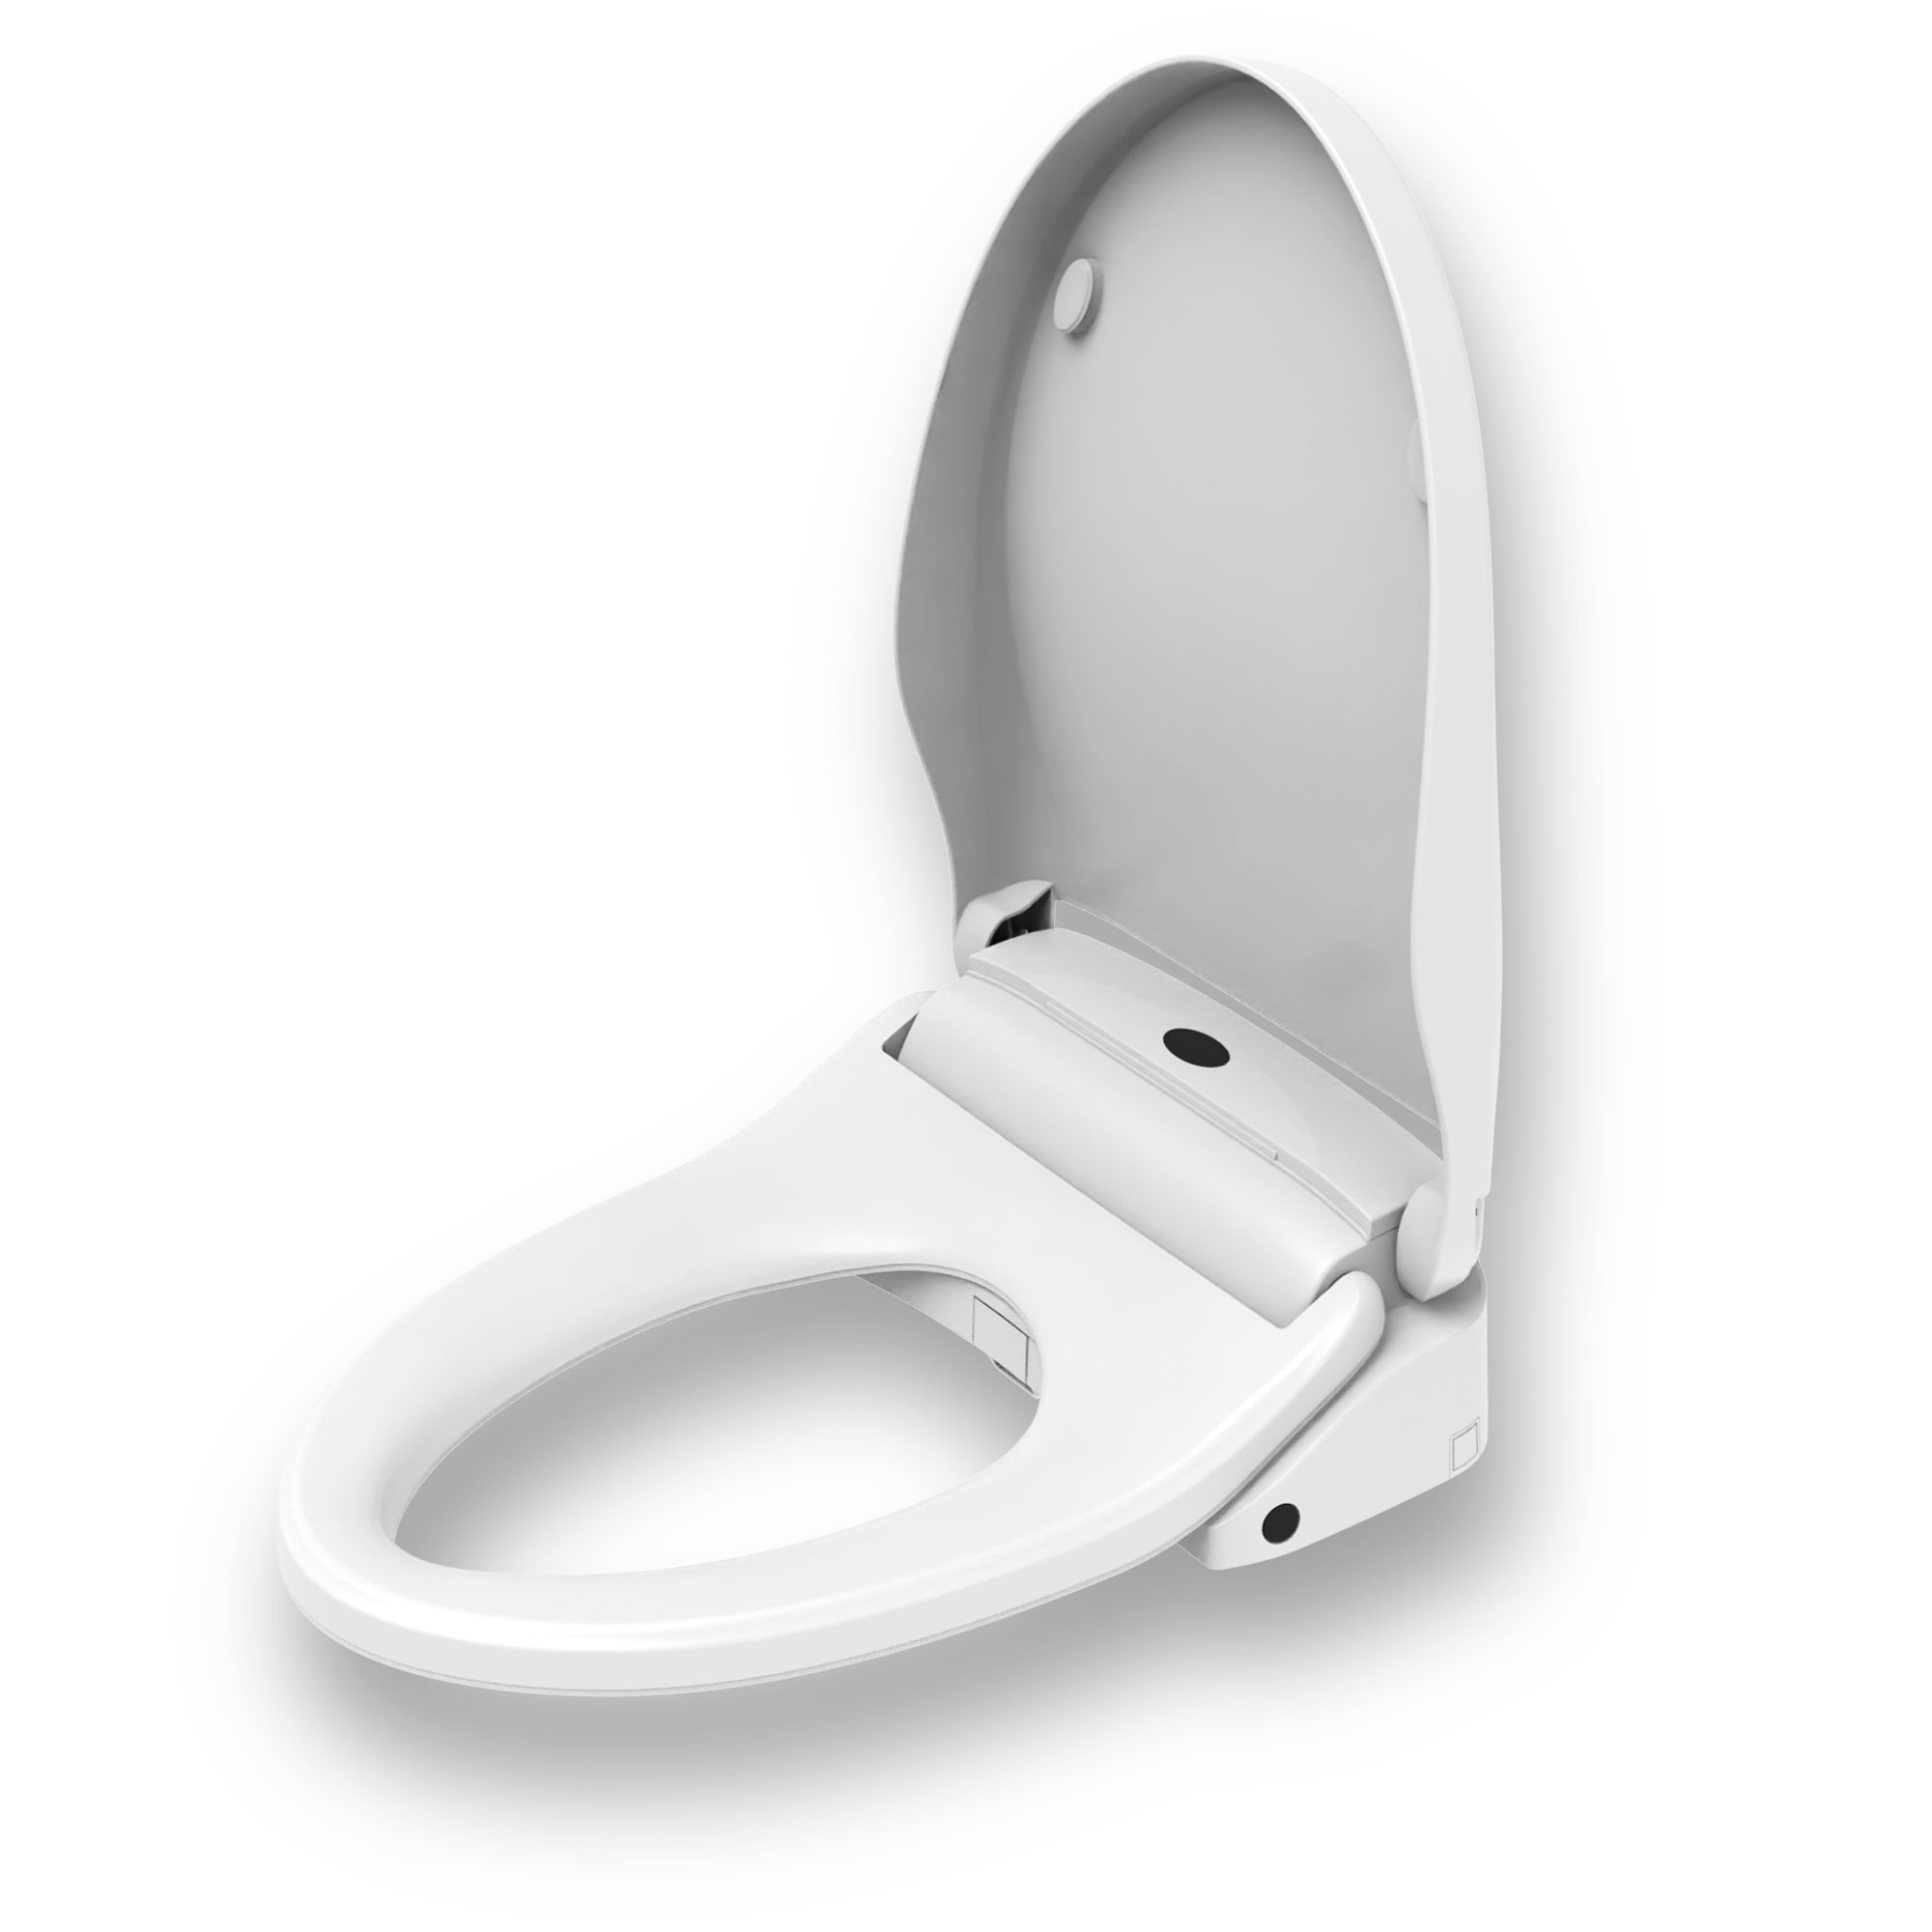 Lumawarm siège de toilette chauffant blanc avec veilleuse pour